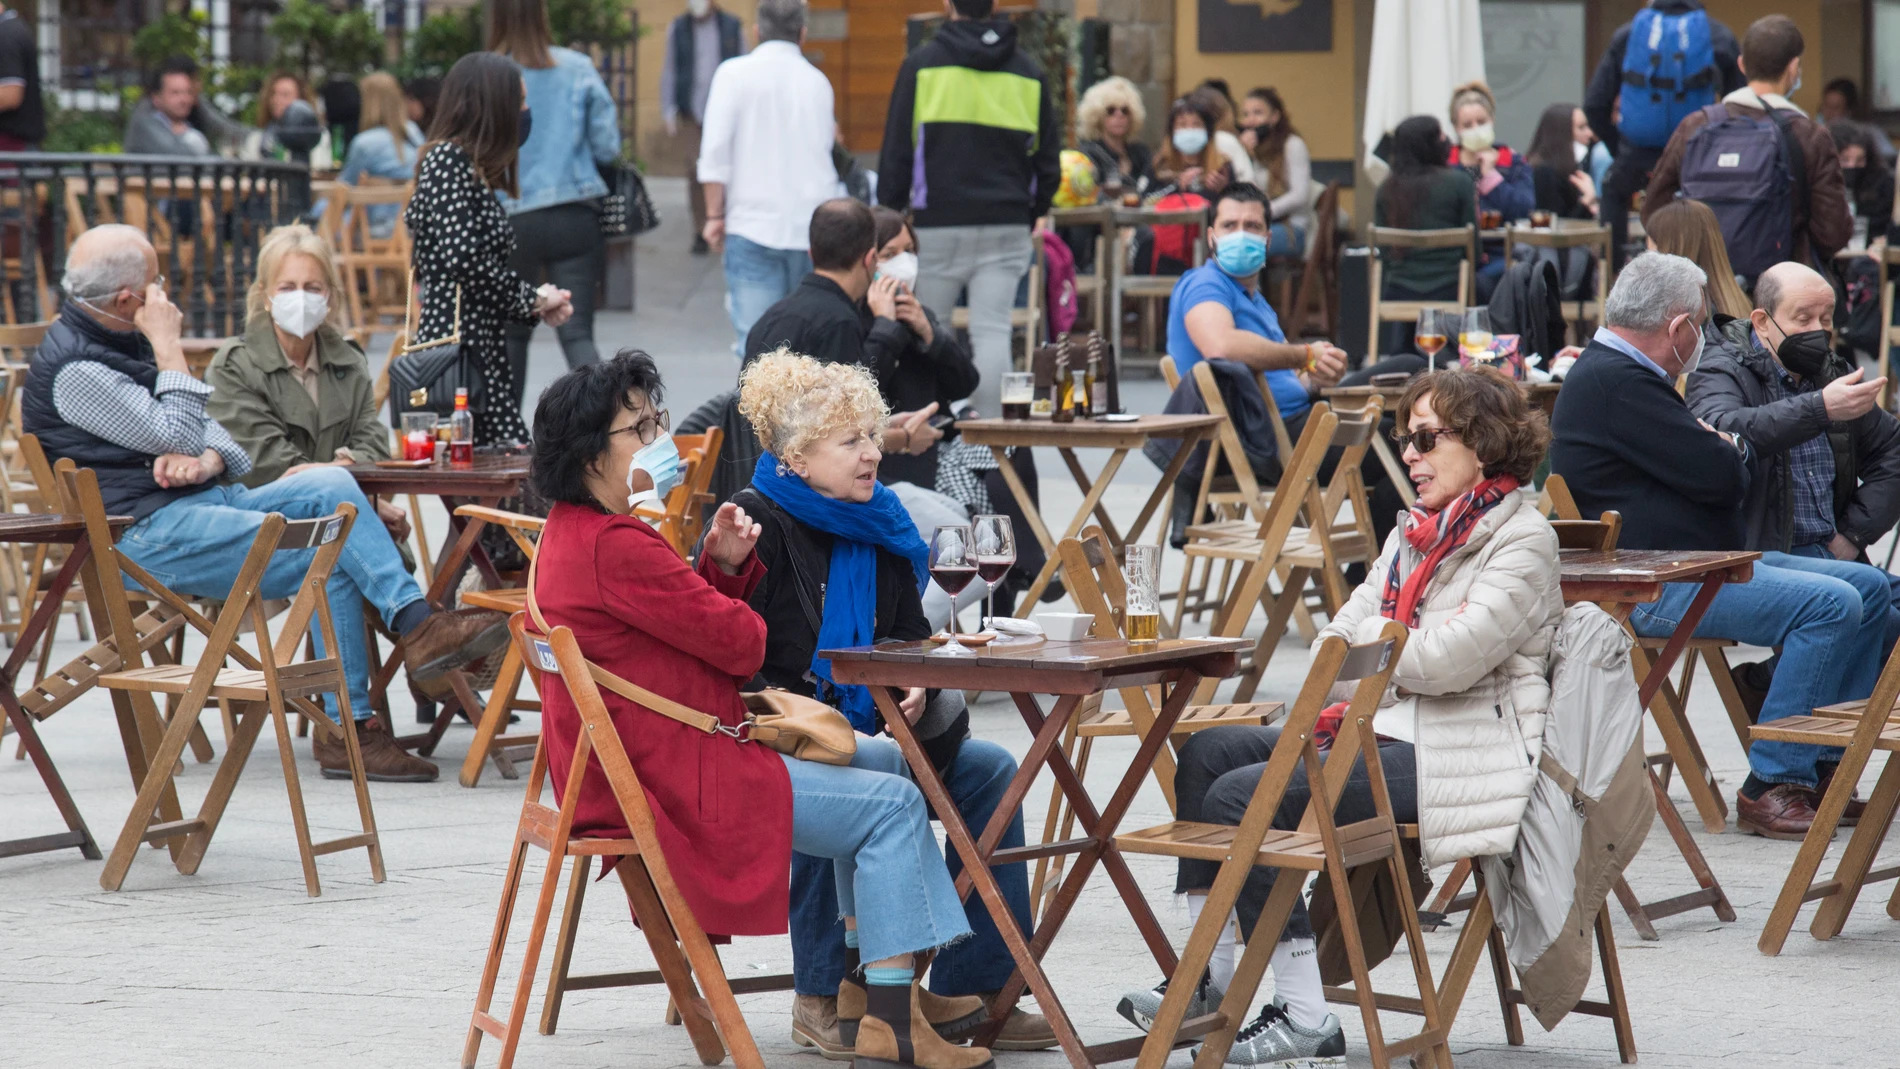 Una terraza llena de gente durante el primer día del puente de Semana Santa, en Madrid (España), a 1 de abril de 2021. La región de Asturias permanece cerrada hasta el final del estado de alarma, previsto para el 9 de mayo. Otras de las medidas son el cierre de bares y restaurantes a las 20 horas y el toque de queda de 22 horas de la noche a 6 de la mañana.ASTURIAS;BARES;RESTAURANTES;MASCARILLA;CORONAVIRUS;CIERRE PERIMETRAL;CONTAGIOSJorge Peteiro / Europa Press01/04/2021